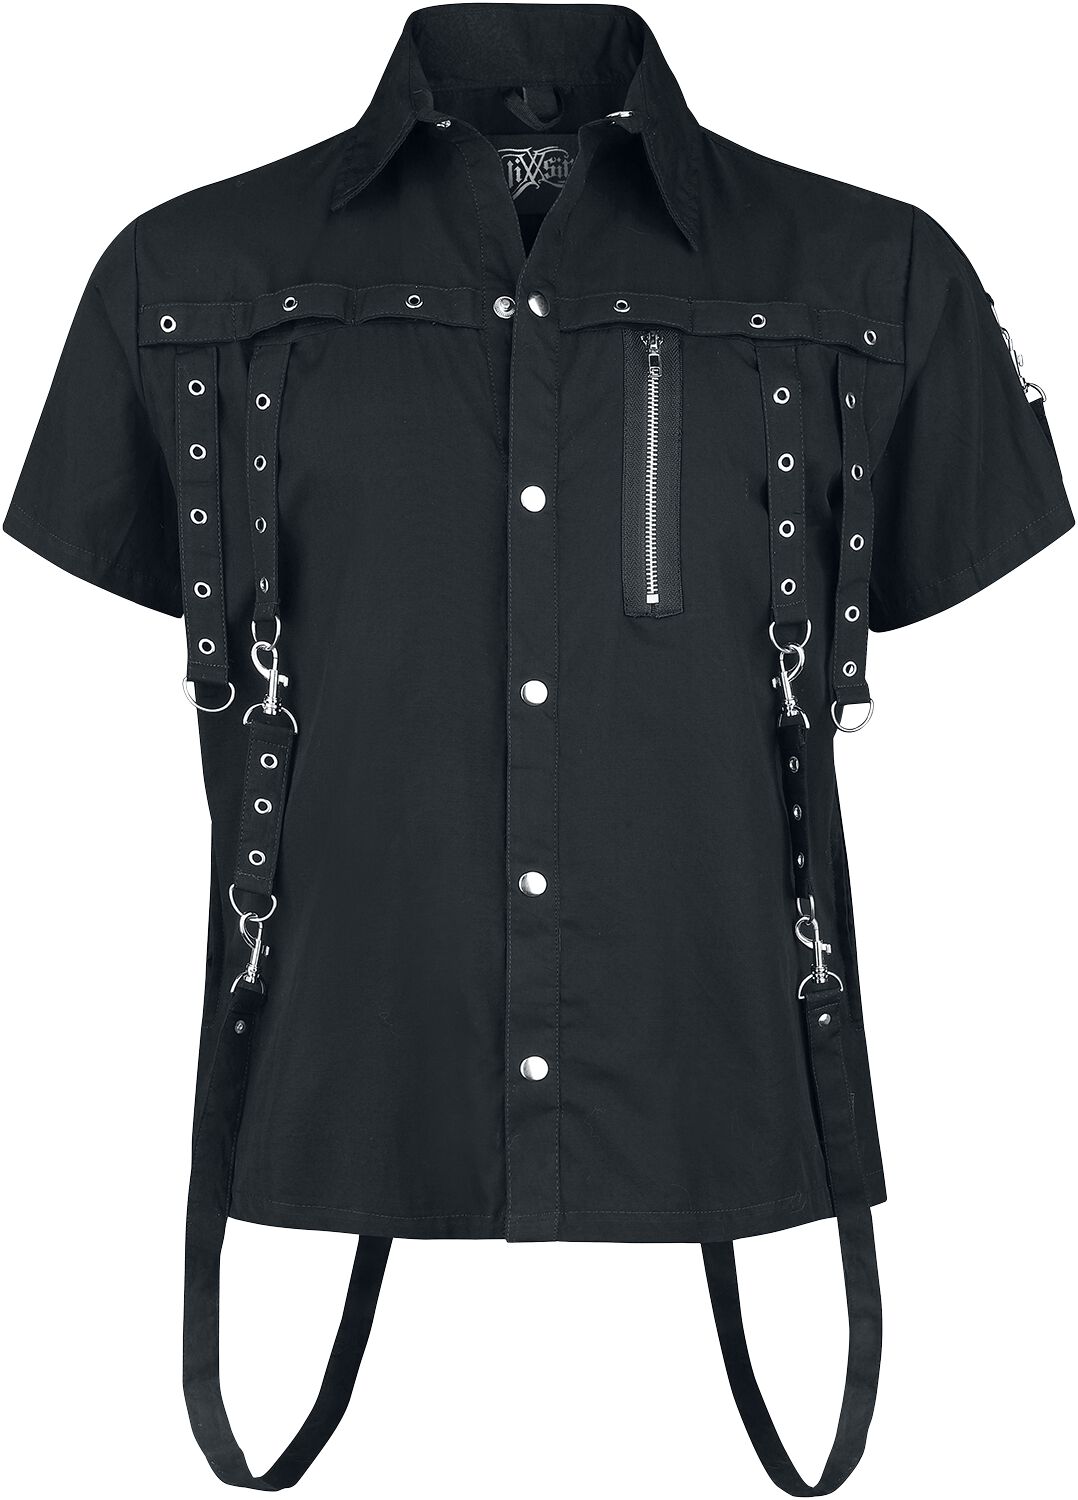 Vixxsin - Gothic Kurzarmhemd - Cassius Shirt - S bis 4XL - für Männer - Größe XL - schwarz